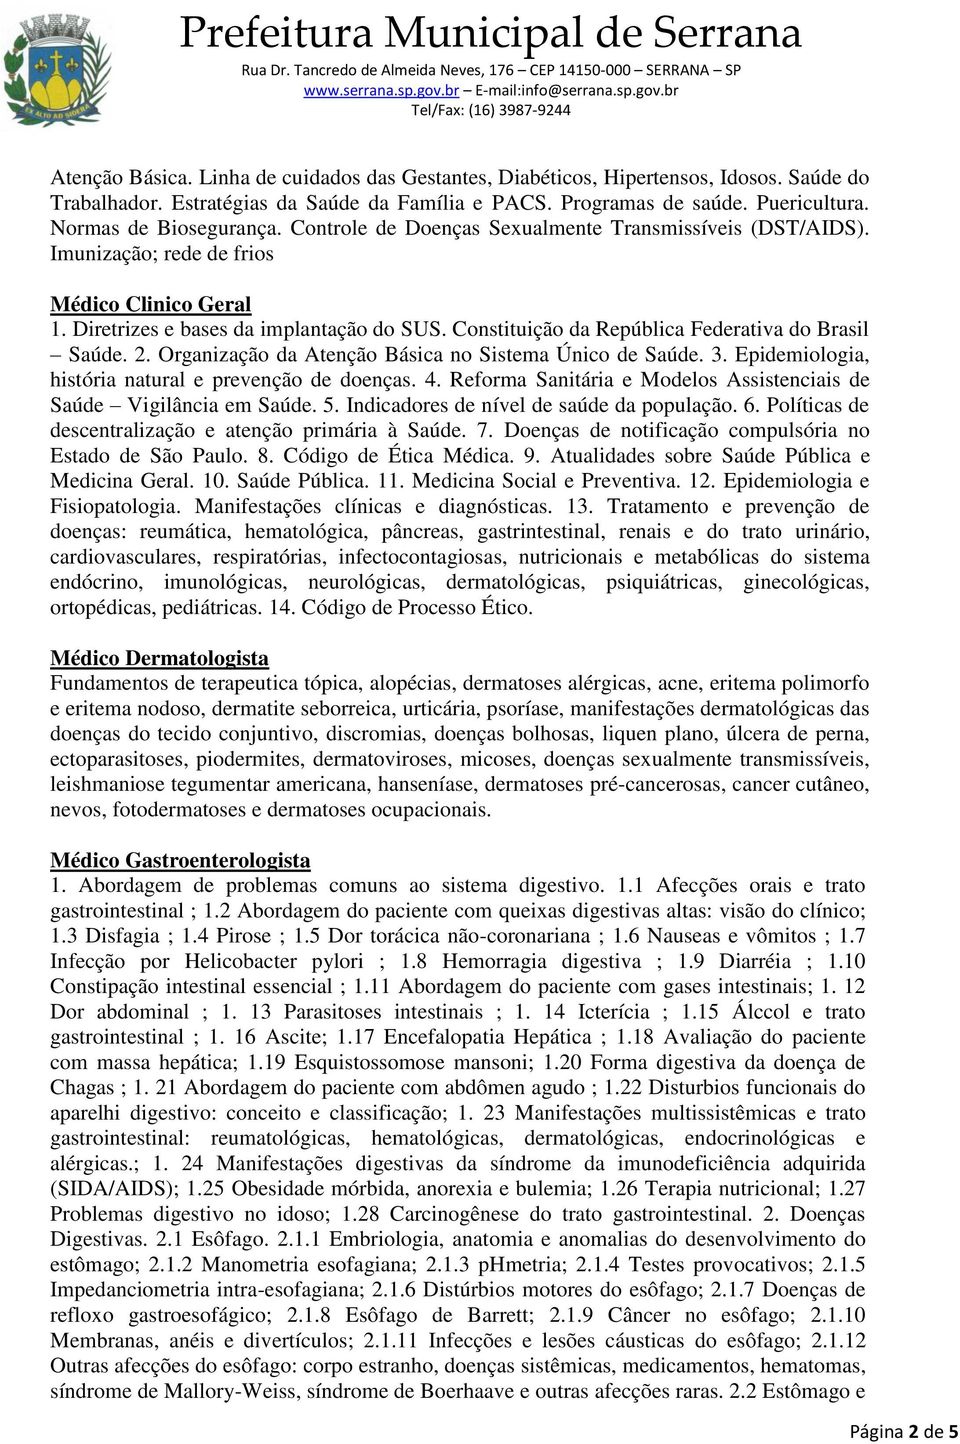 Constituição da República Federativa do Brasil Saúde. 2. Organização da Atenção Básica no Sistema Único de Saúde. 3. Epidemiologia, história natural e prevenção de doenças. 4.